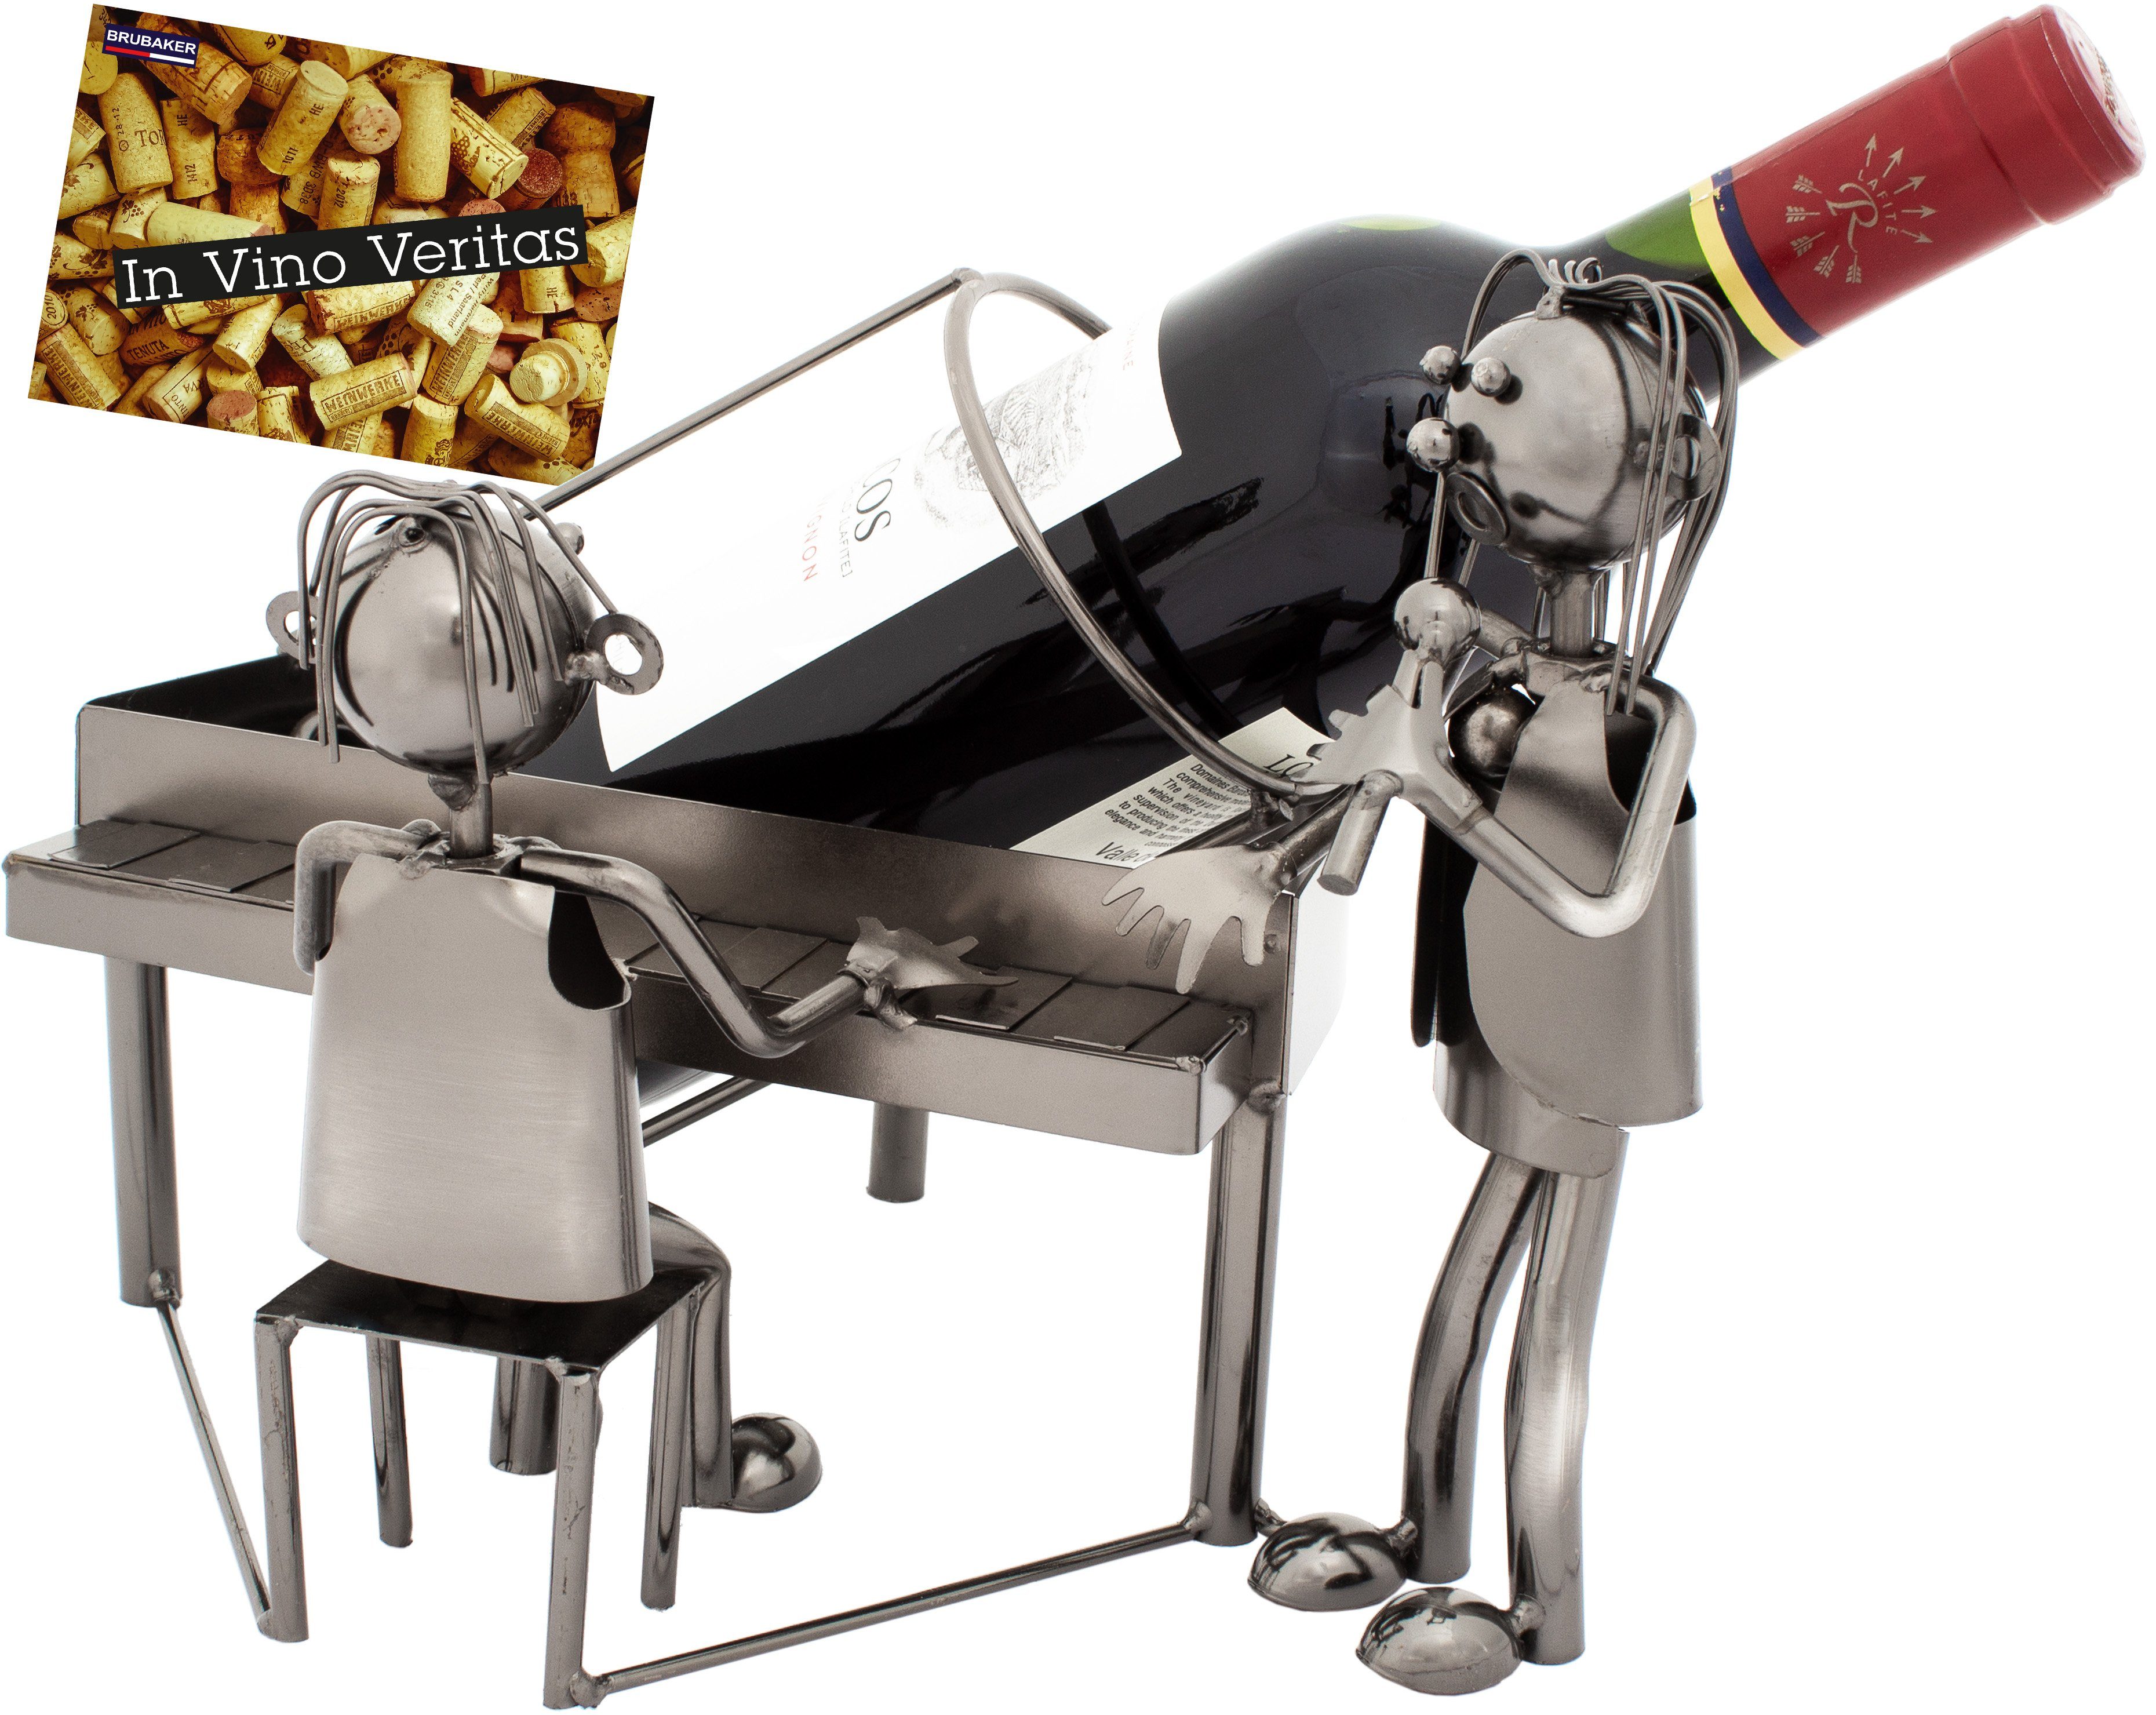 BRUBAKER Weinflaschenhalter Duo mit Sänger am Klavier Flaschenhalter, (inklusive Grußkarte), Metall Skulptur, Wein Geschenk, Weinhalter